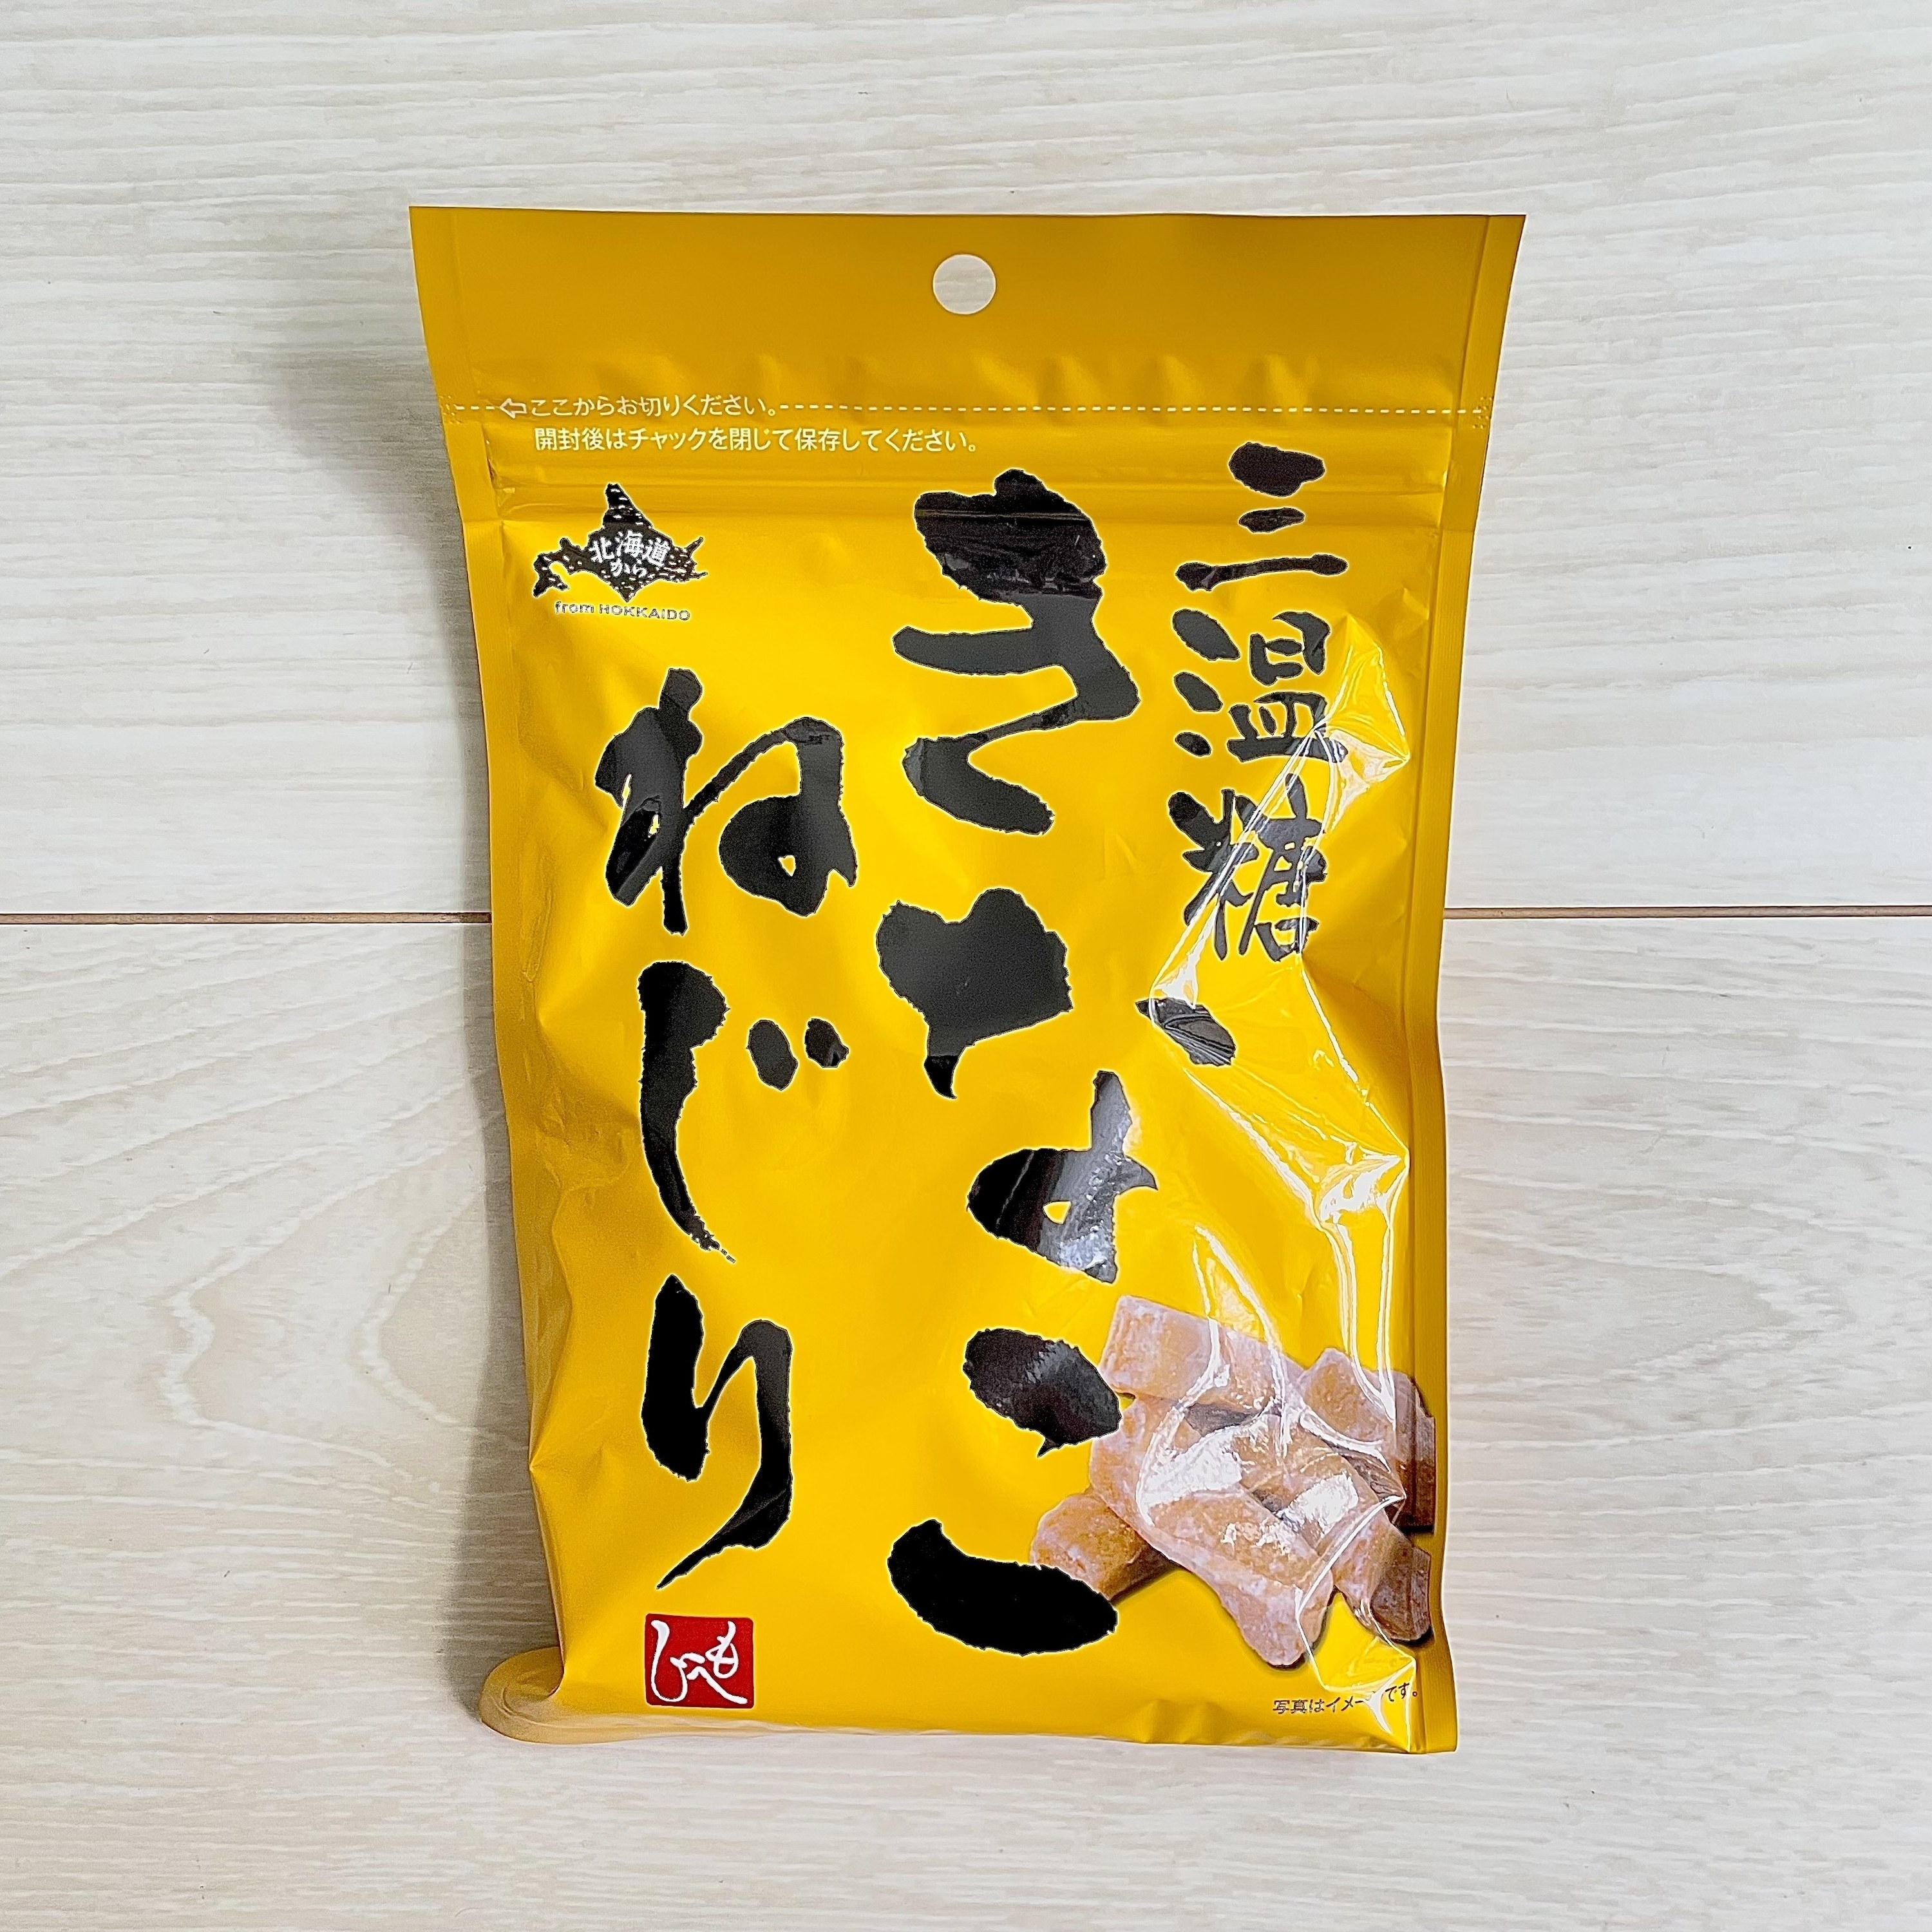 KALDI（カルディ）のおすすめスナック菓子「北海道から 三温糖きなこねじり 150g」